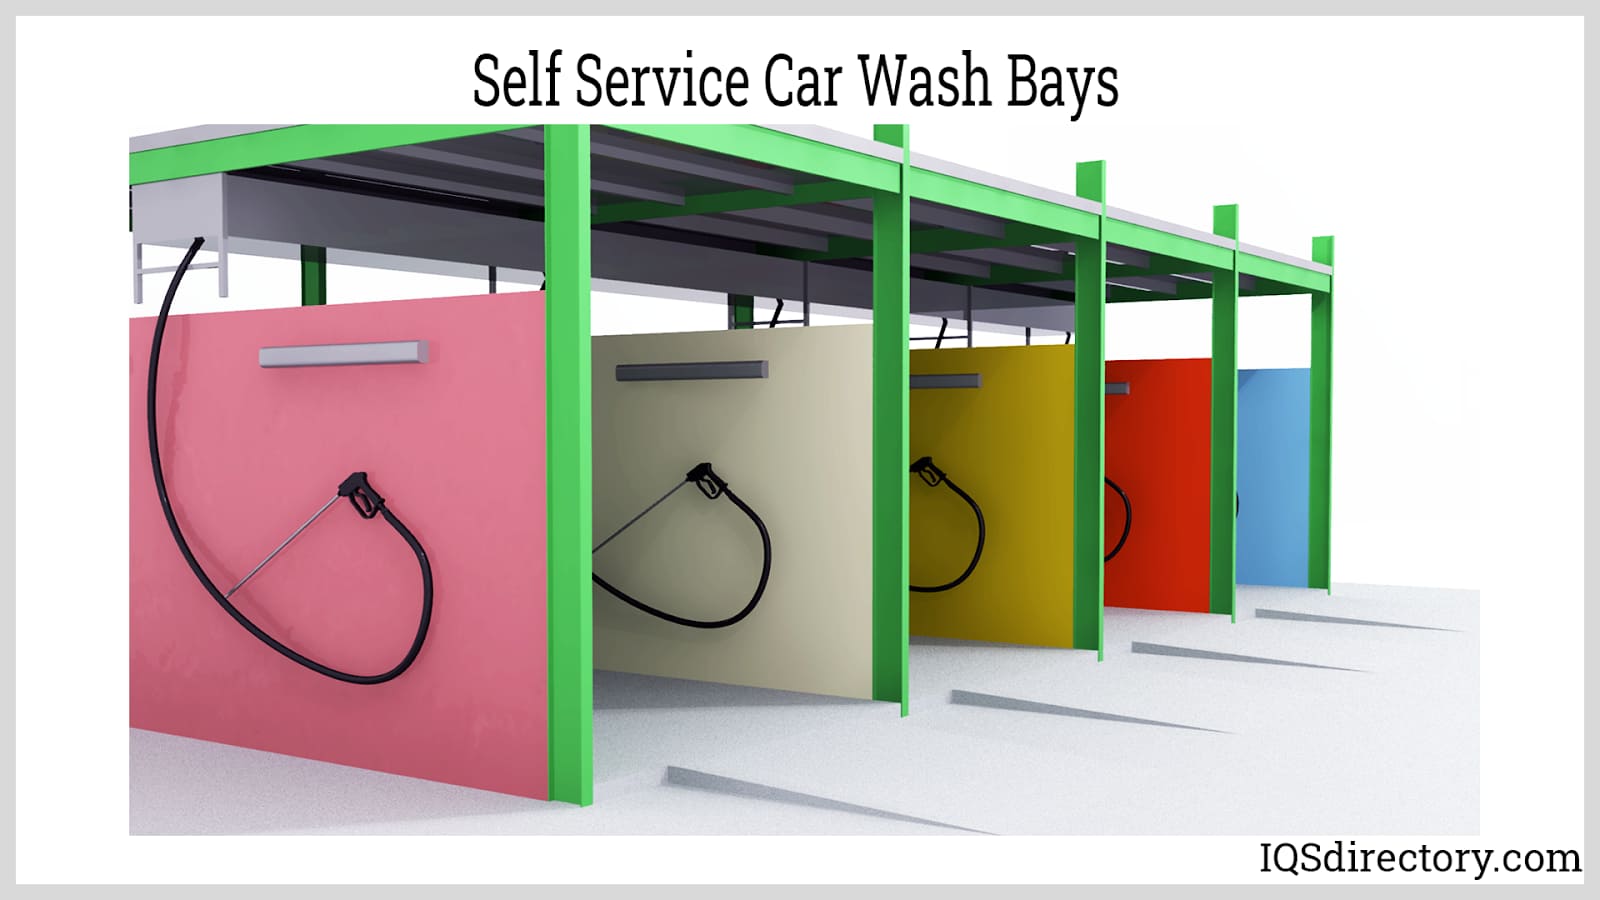 Self Service Car Wash Bays